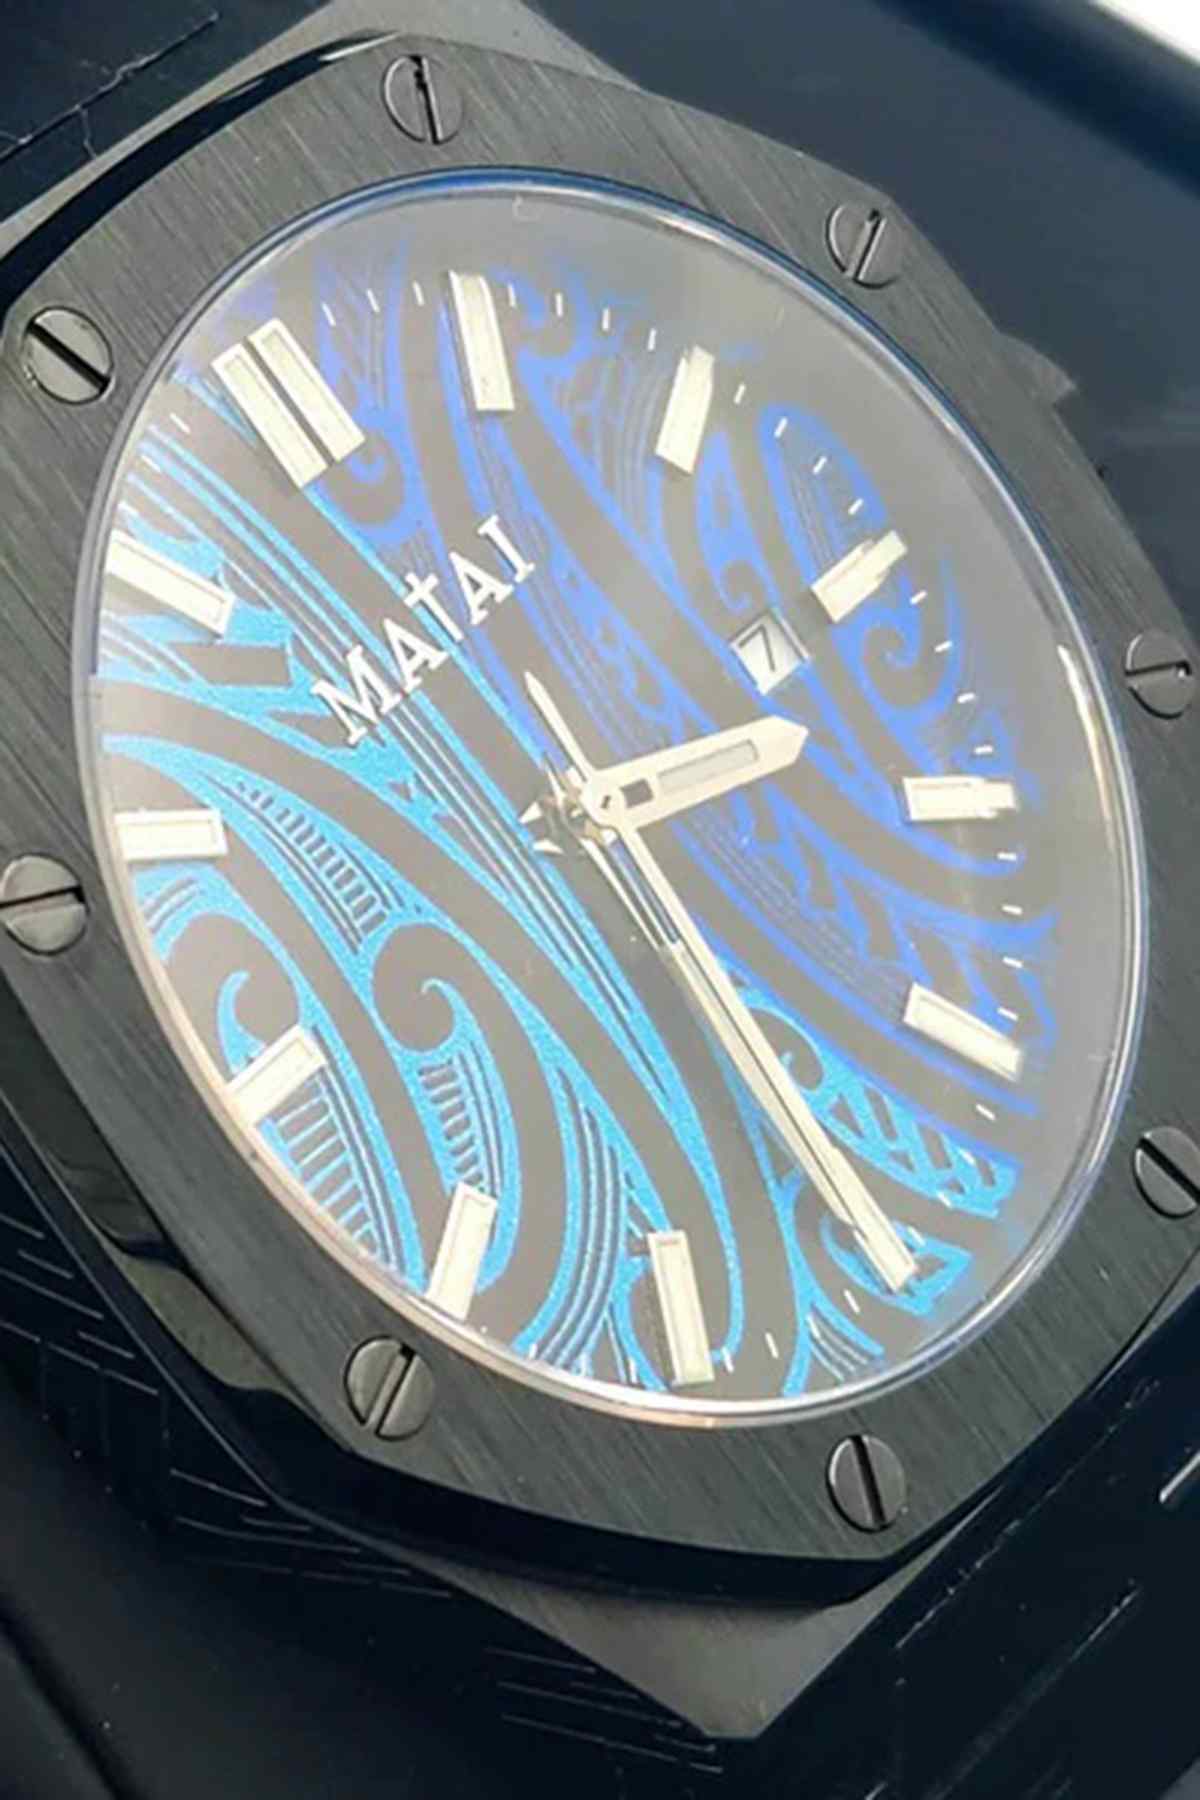 Matai - Iva Masina Collection Watch Black/Wairua Blue